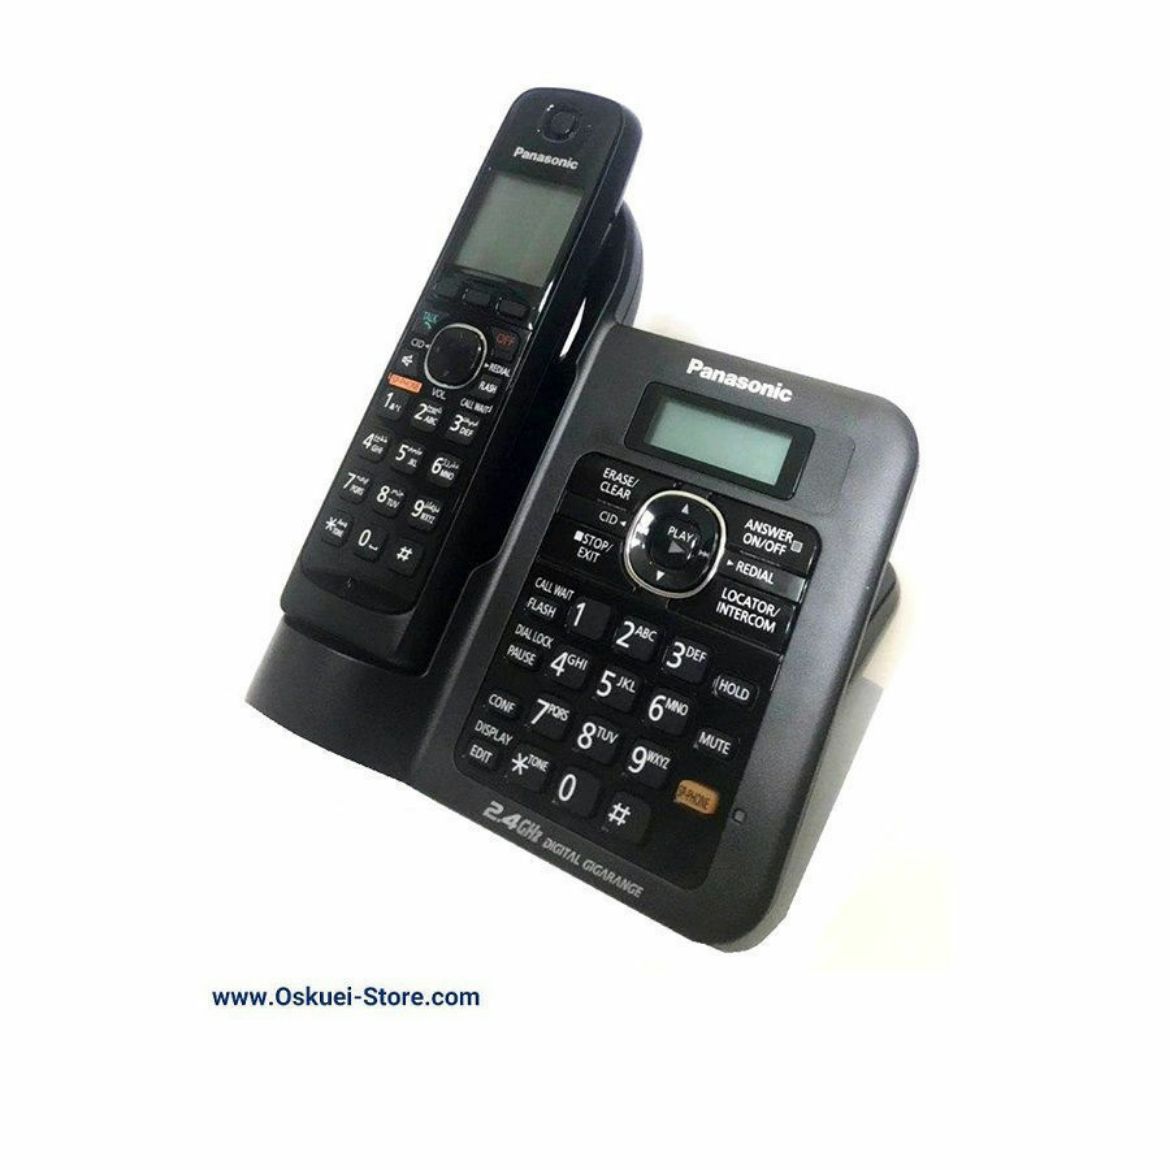 Panasonic KX-TG3821 Cordless Telephone Black Right